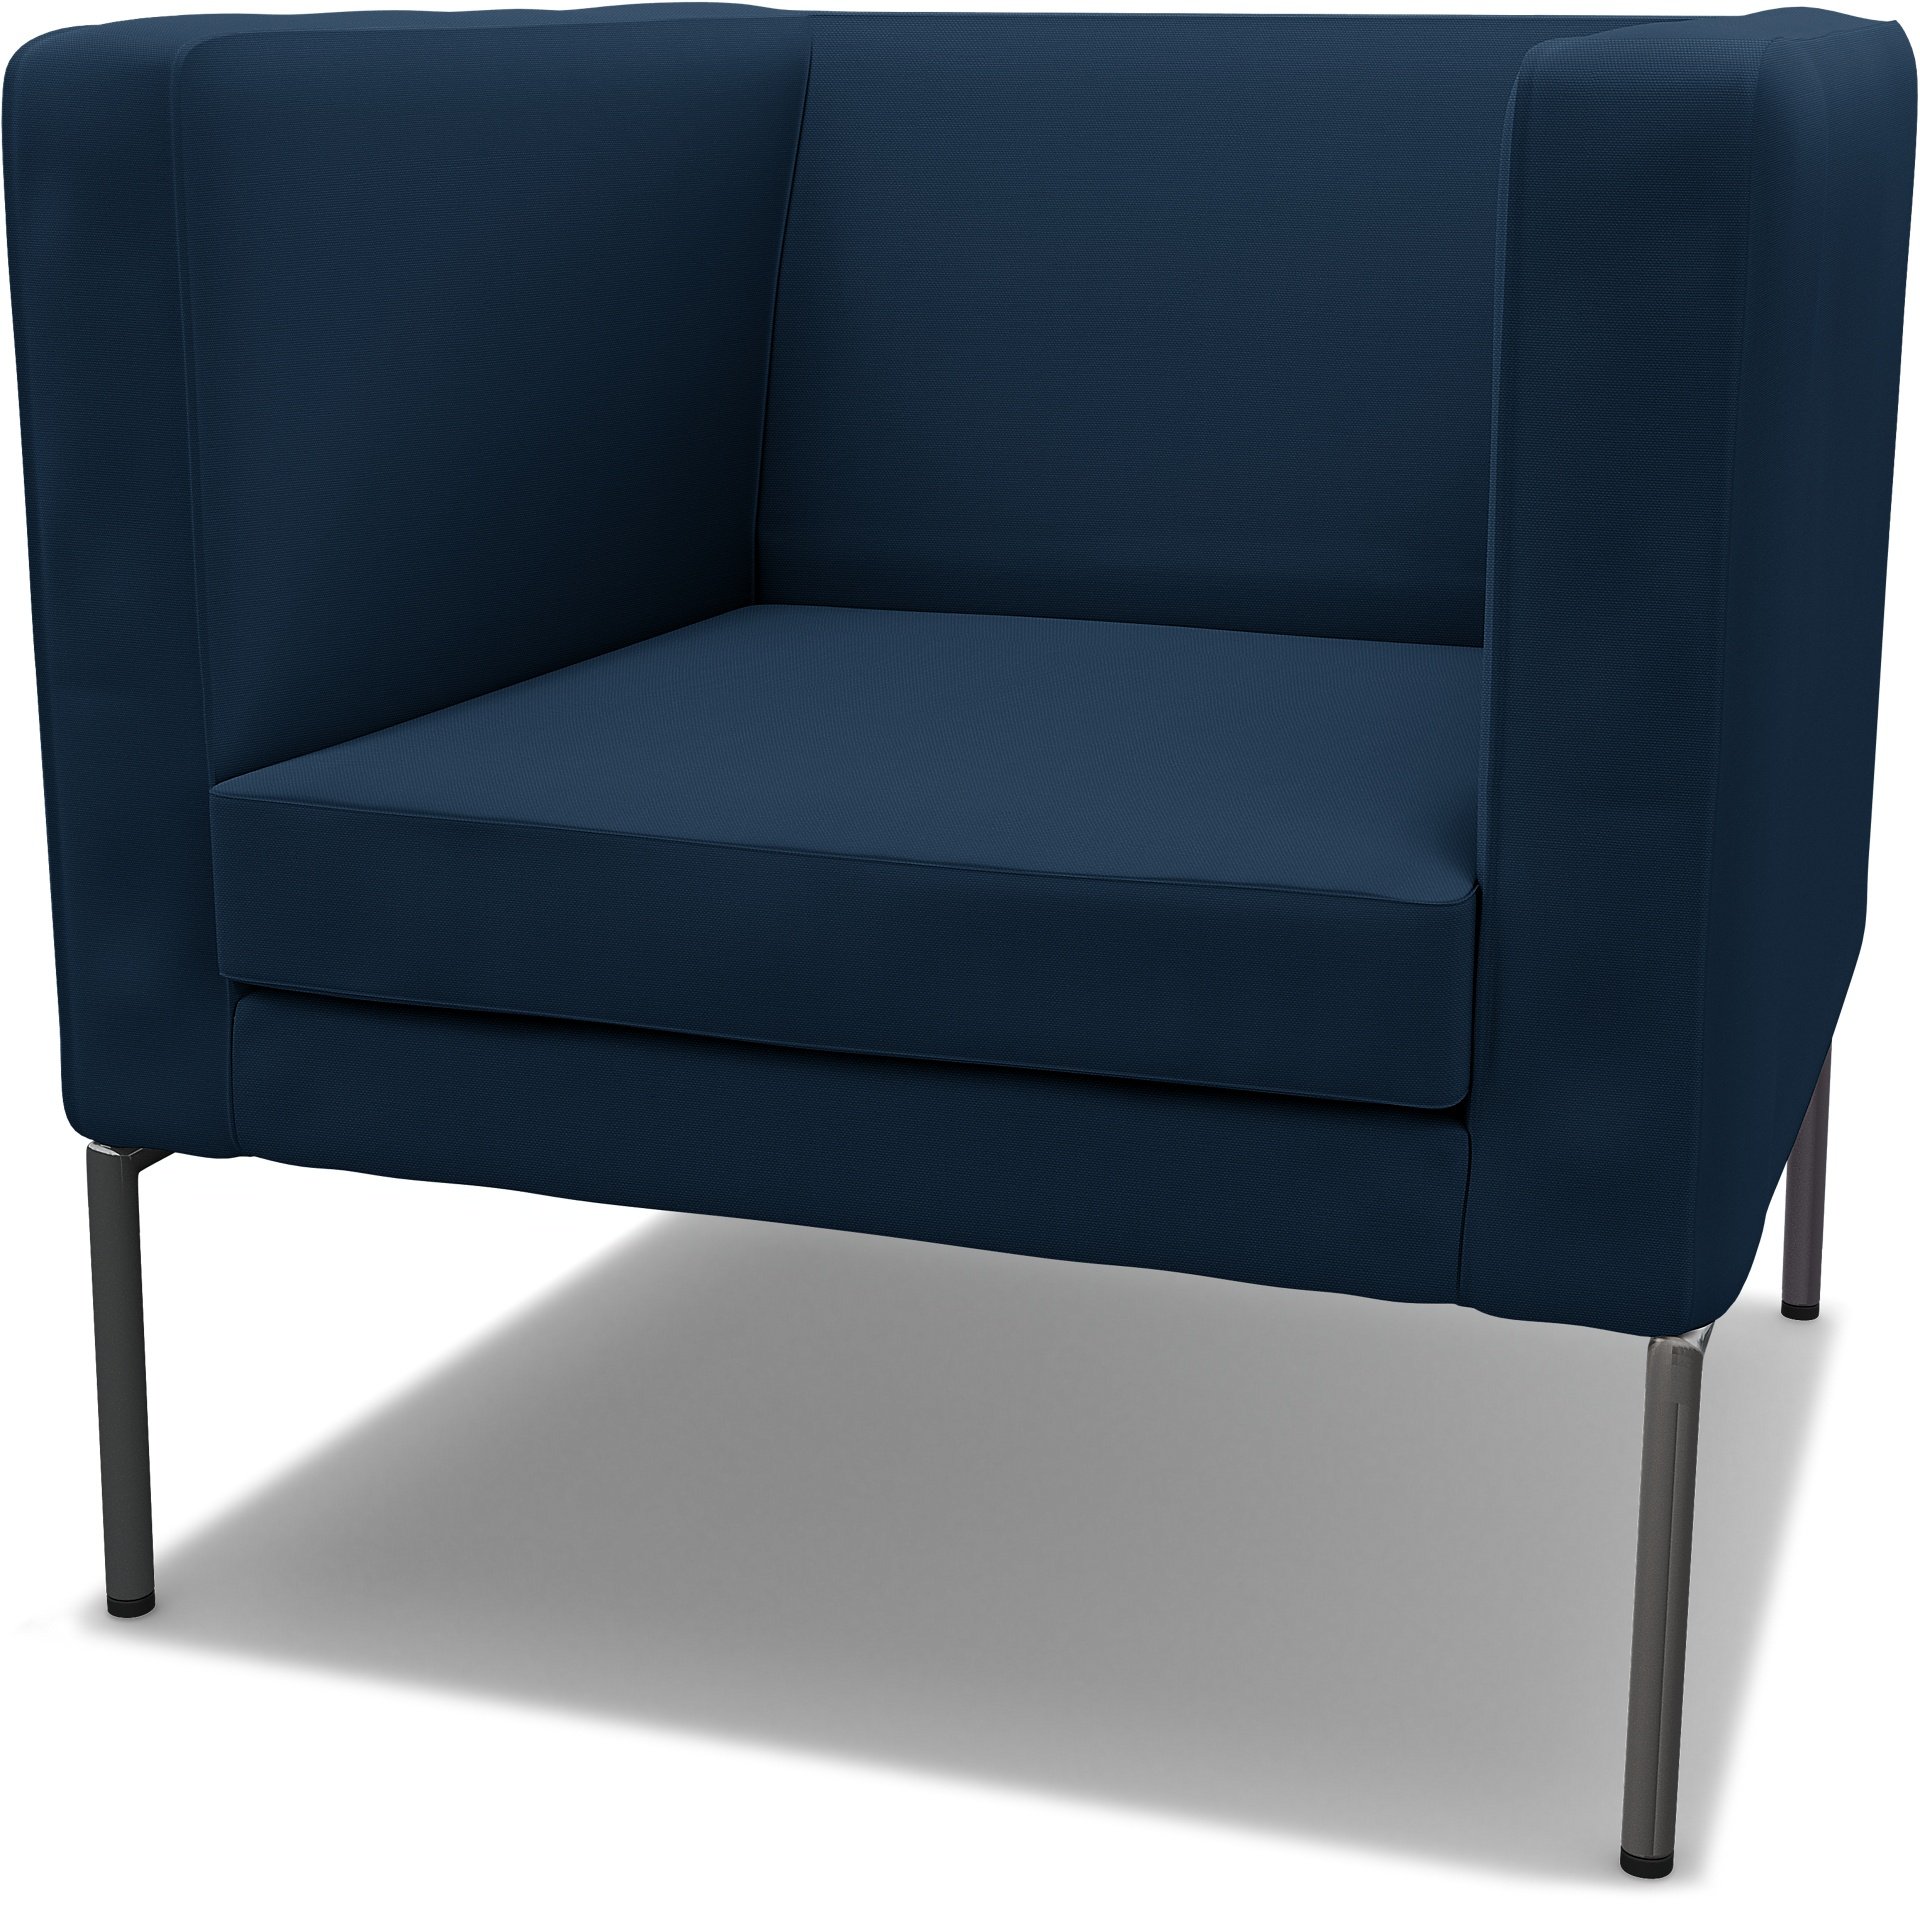 IKEA - Klappsta Armchair Cover, Deep Navy Blue, Cotton - Bemz